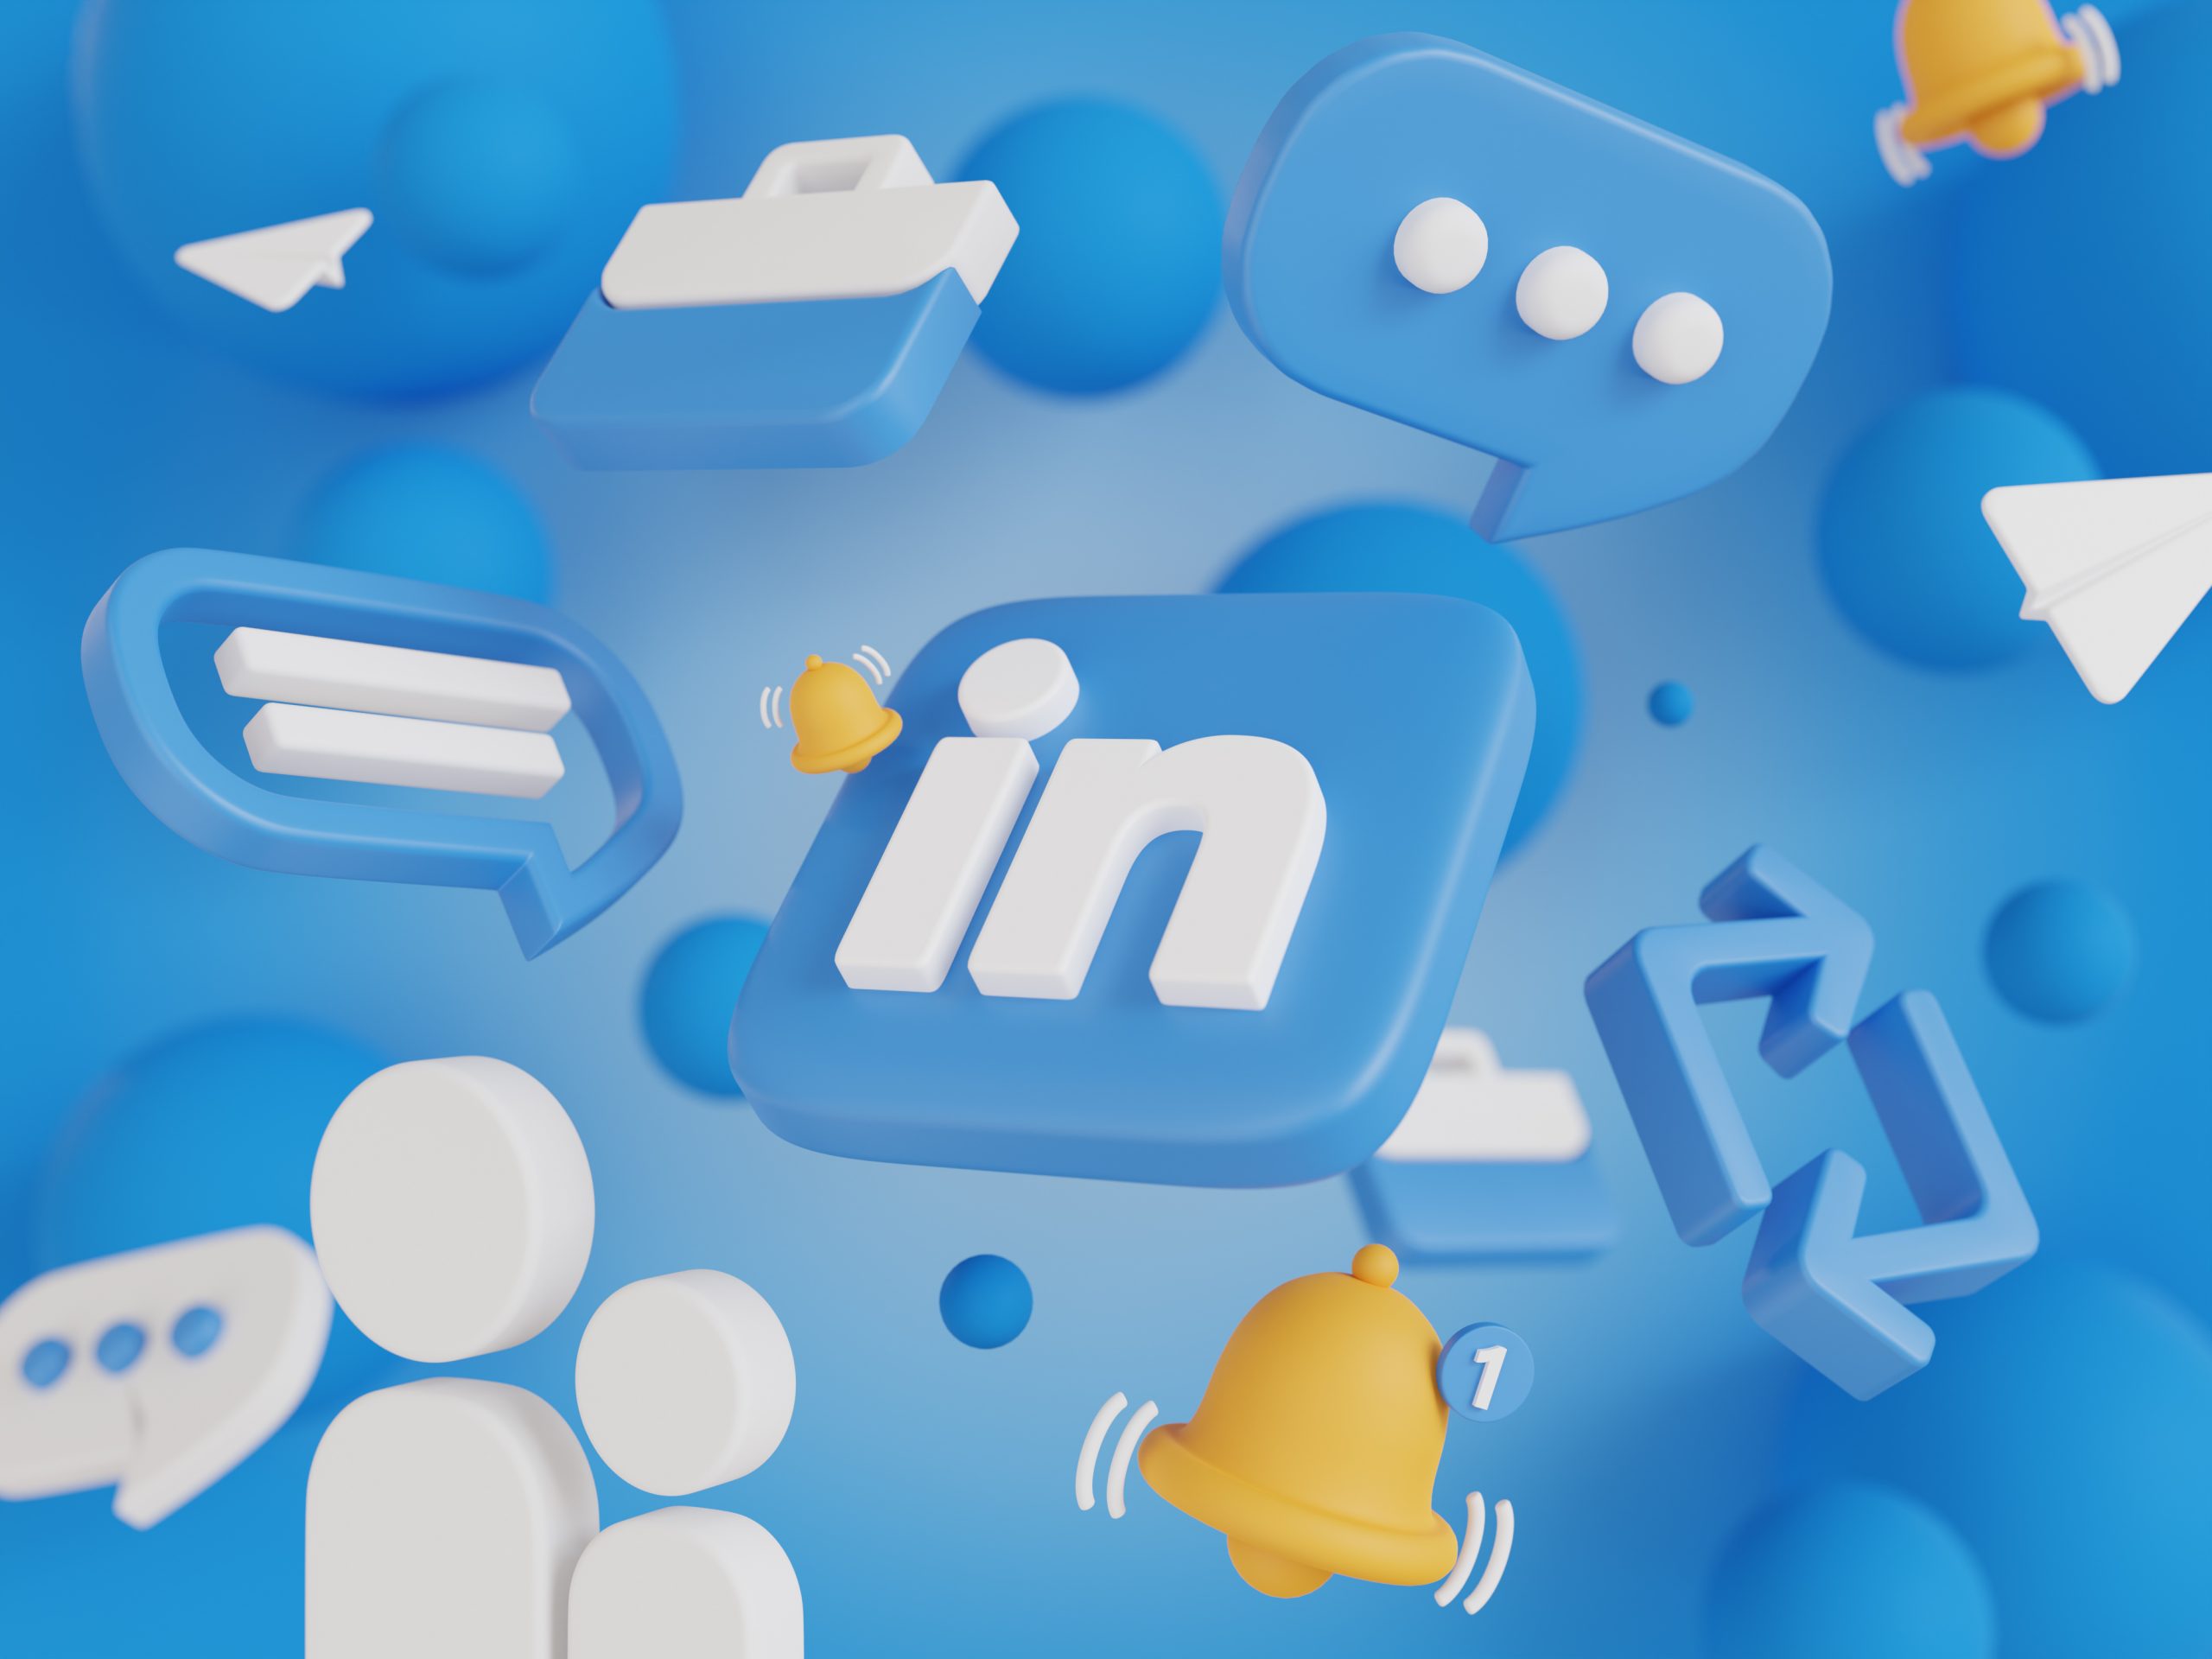 Boostez votre visibilité sur LinkedIn grâce à des posts optimisés - L'Agence E-commerce